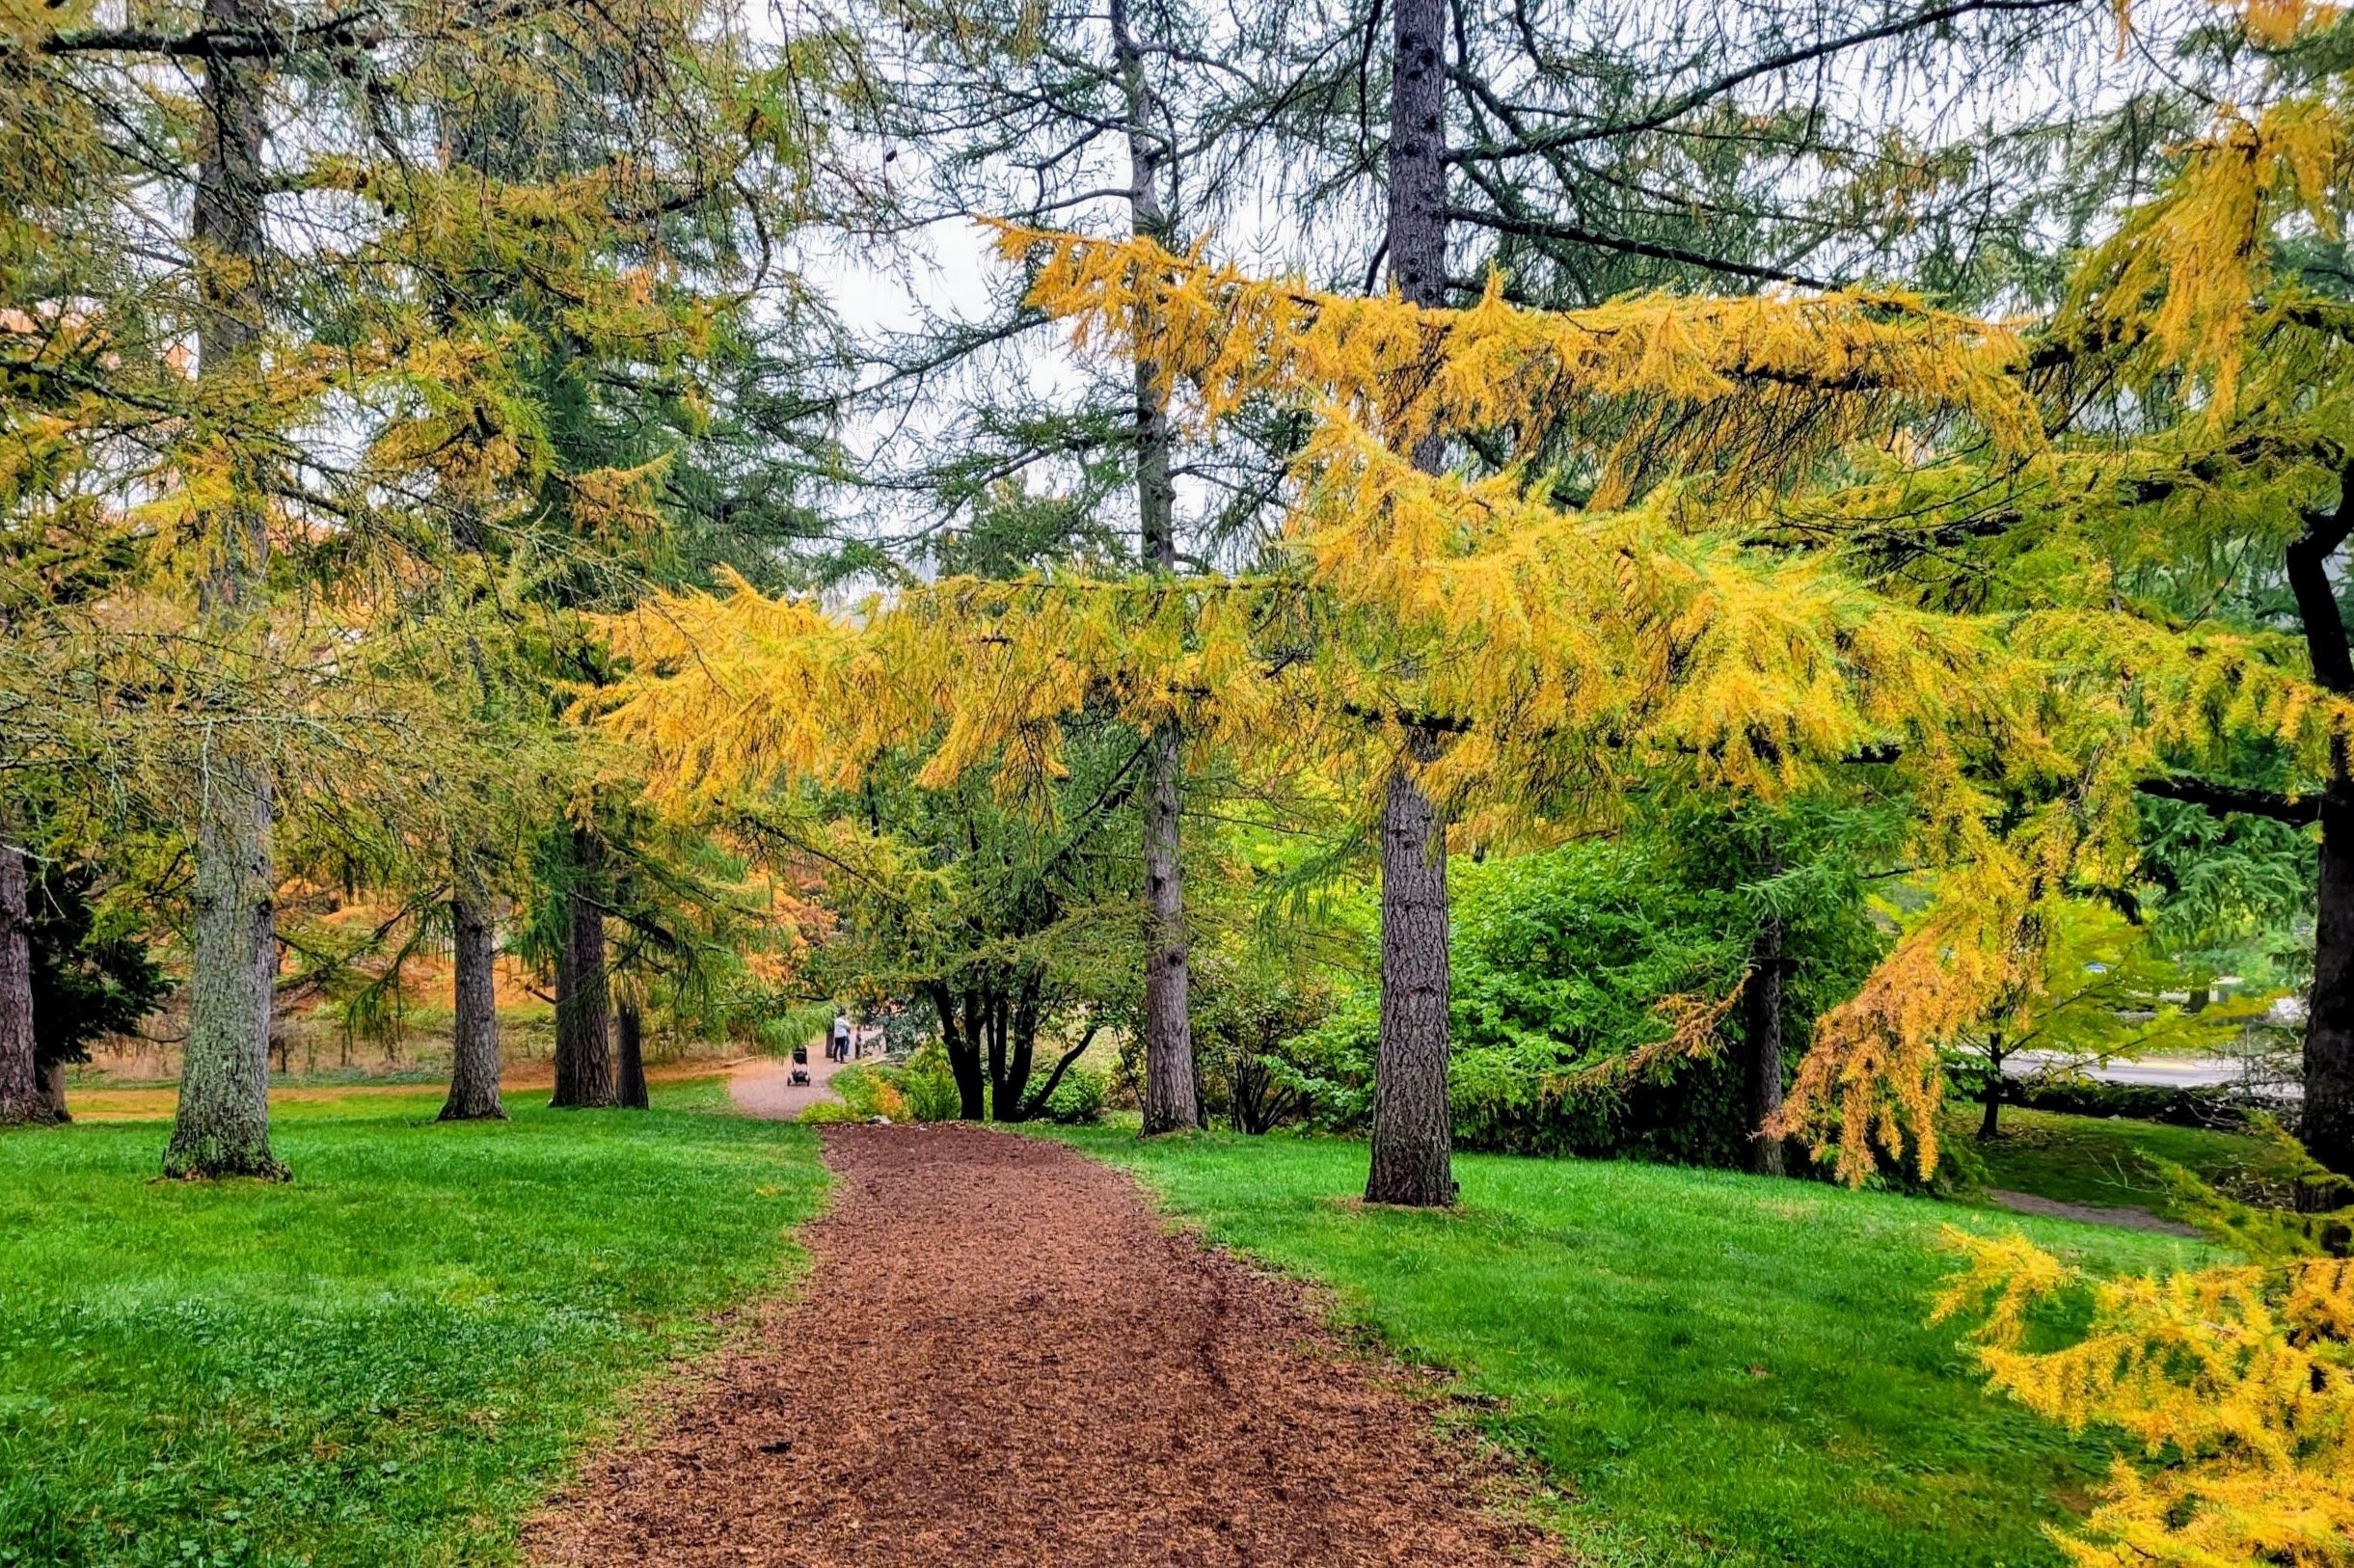 Arnold Arboretum in Jamaica Plain (nature trails and hikes in Boston)